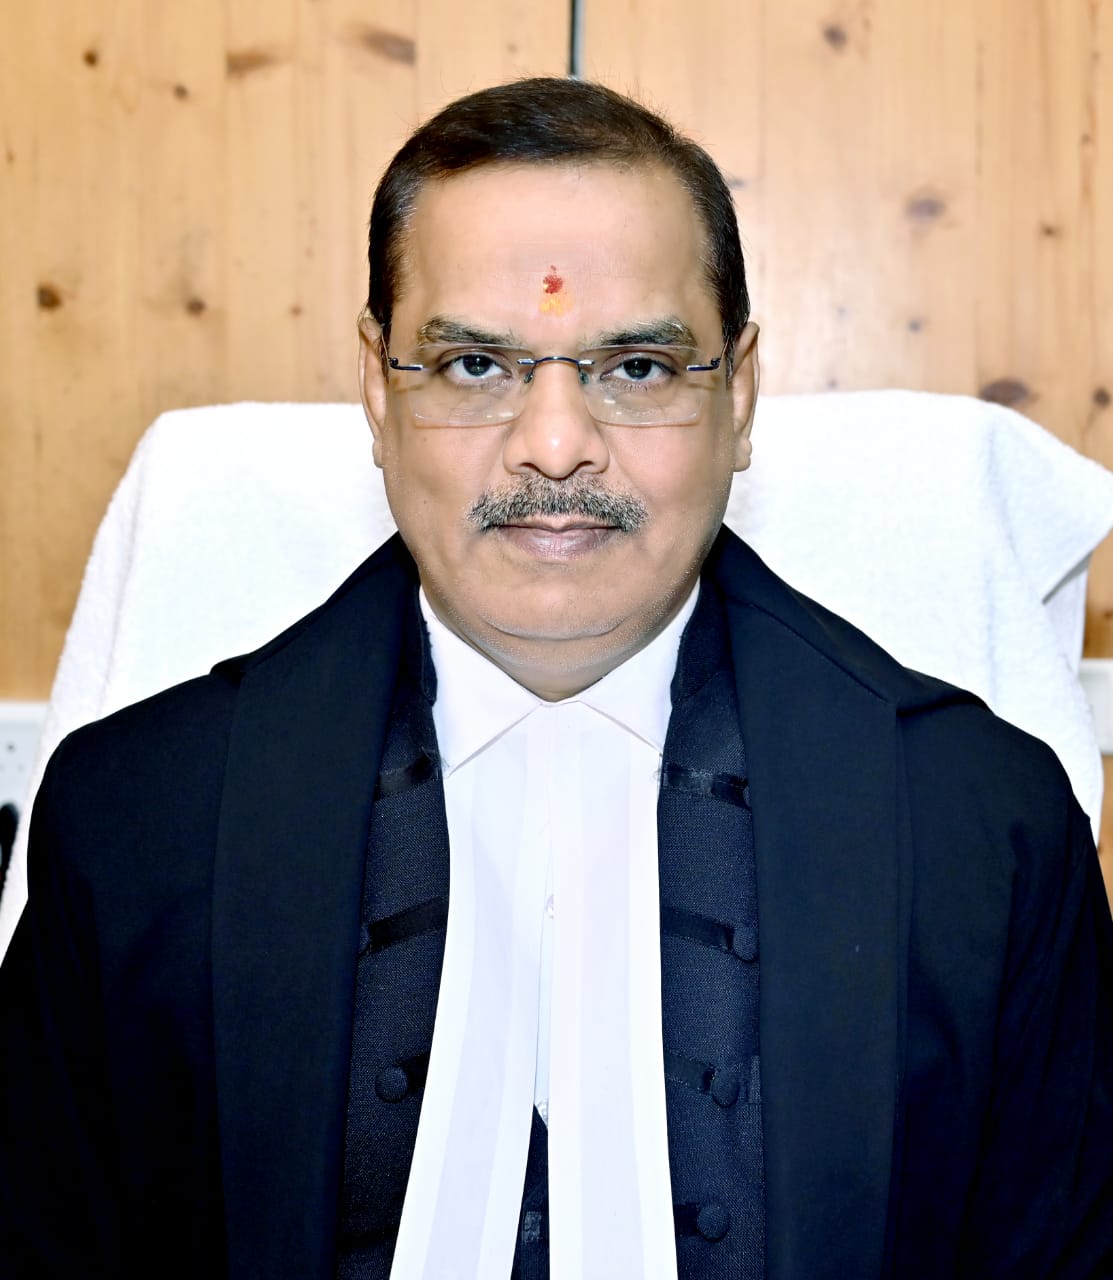 Hon'ble Mr. Justice Sanjay Kumar Jaiswal